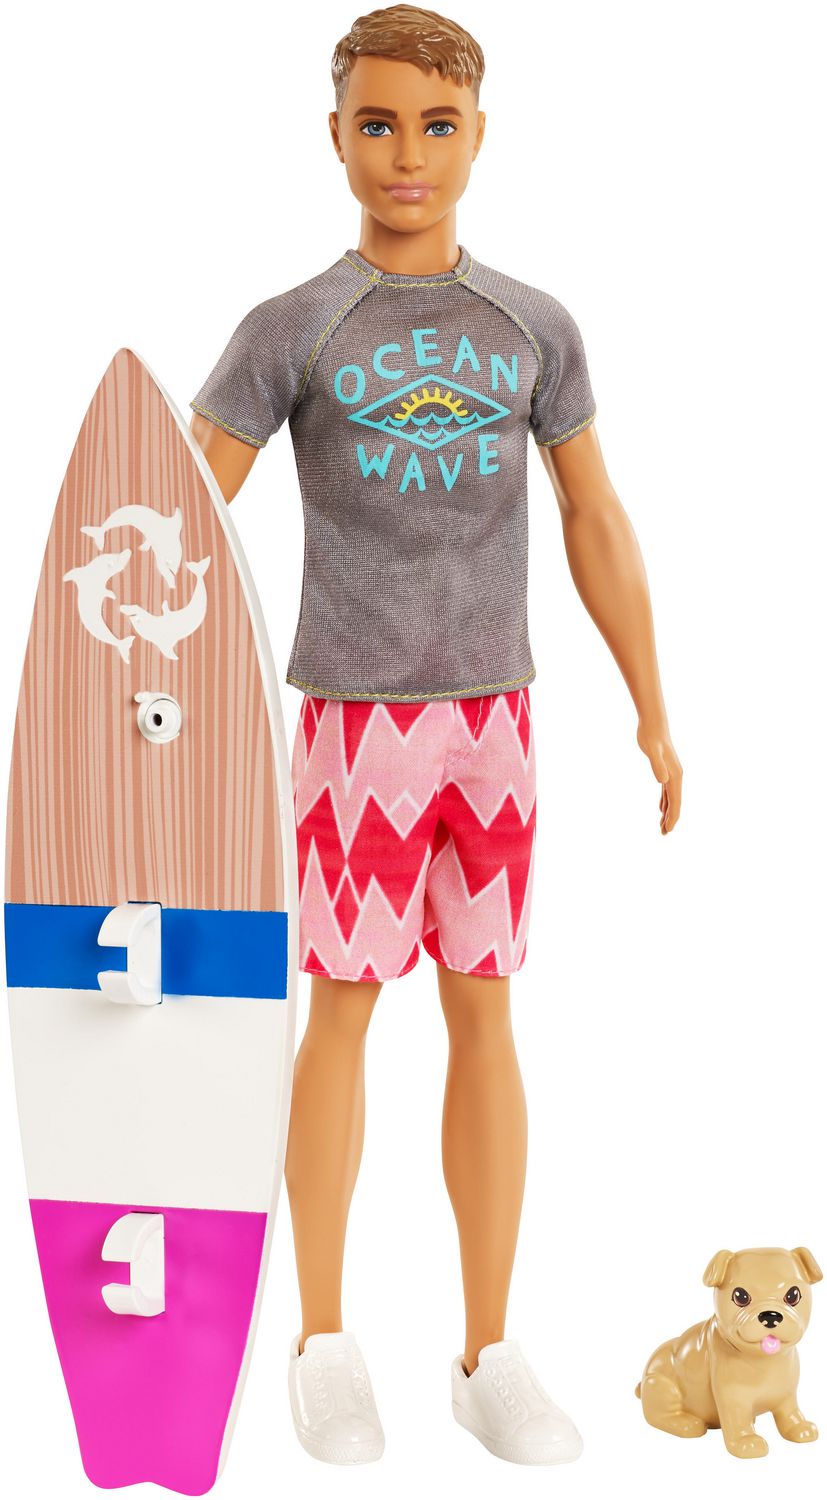 Barbie Surfer Ken Doll